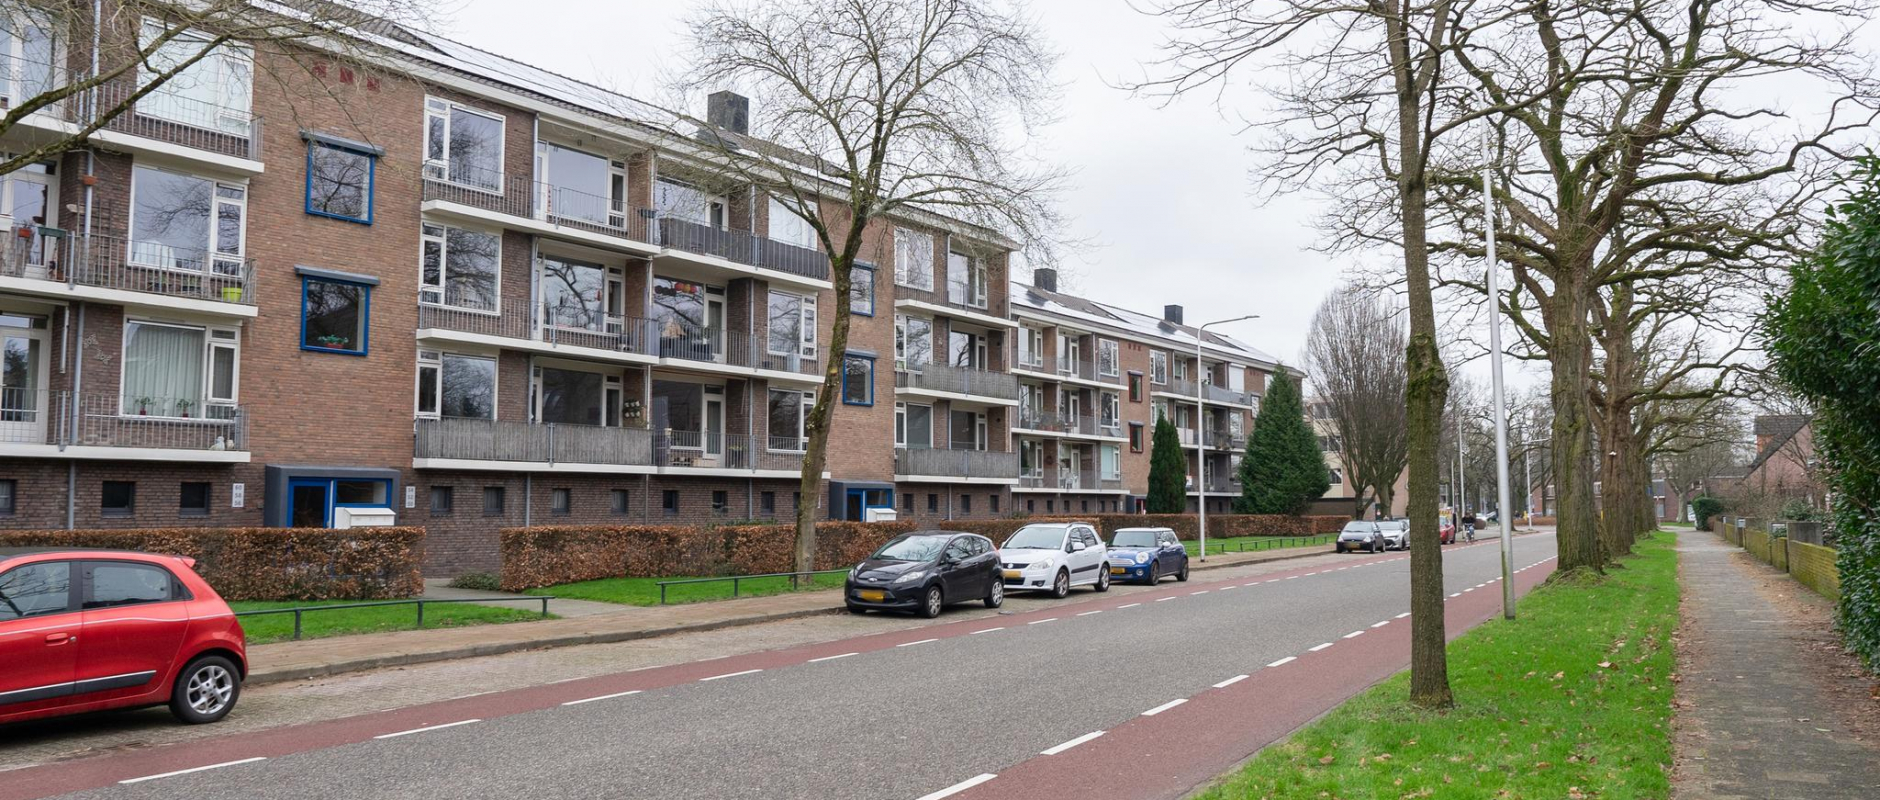 Woning te koop aan de Hogenkampsweg 44 te Zwolle